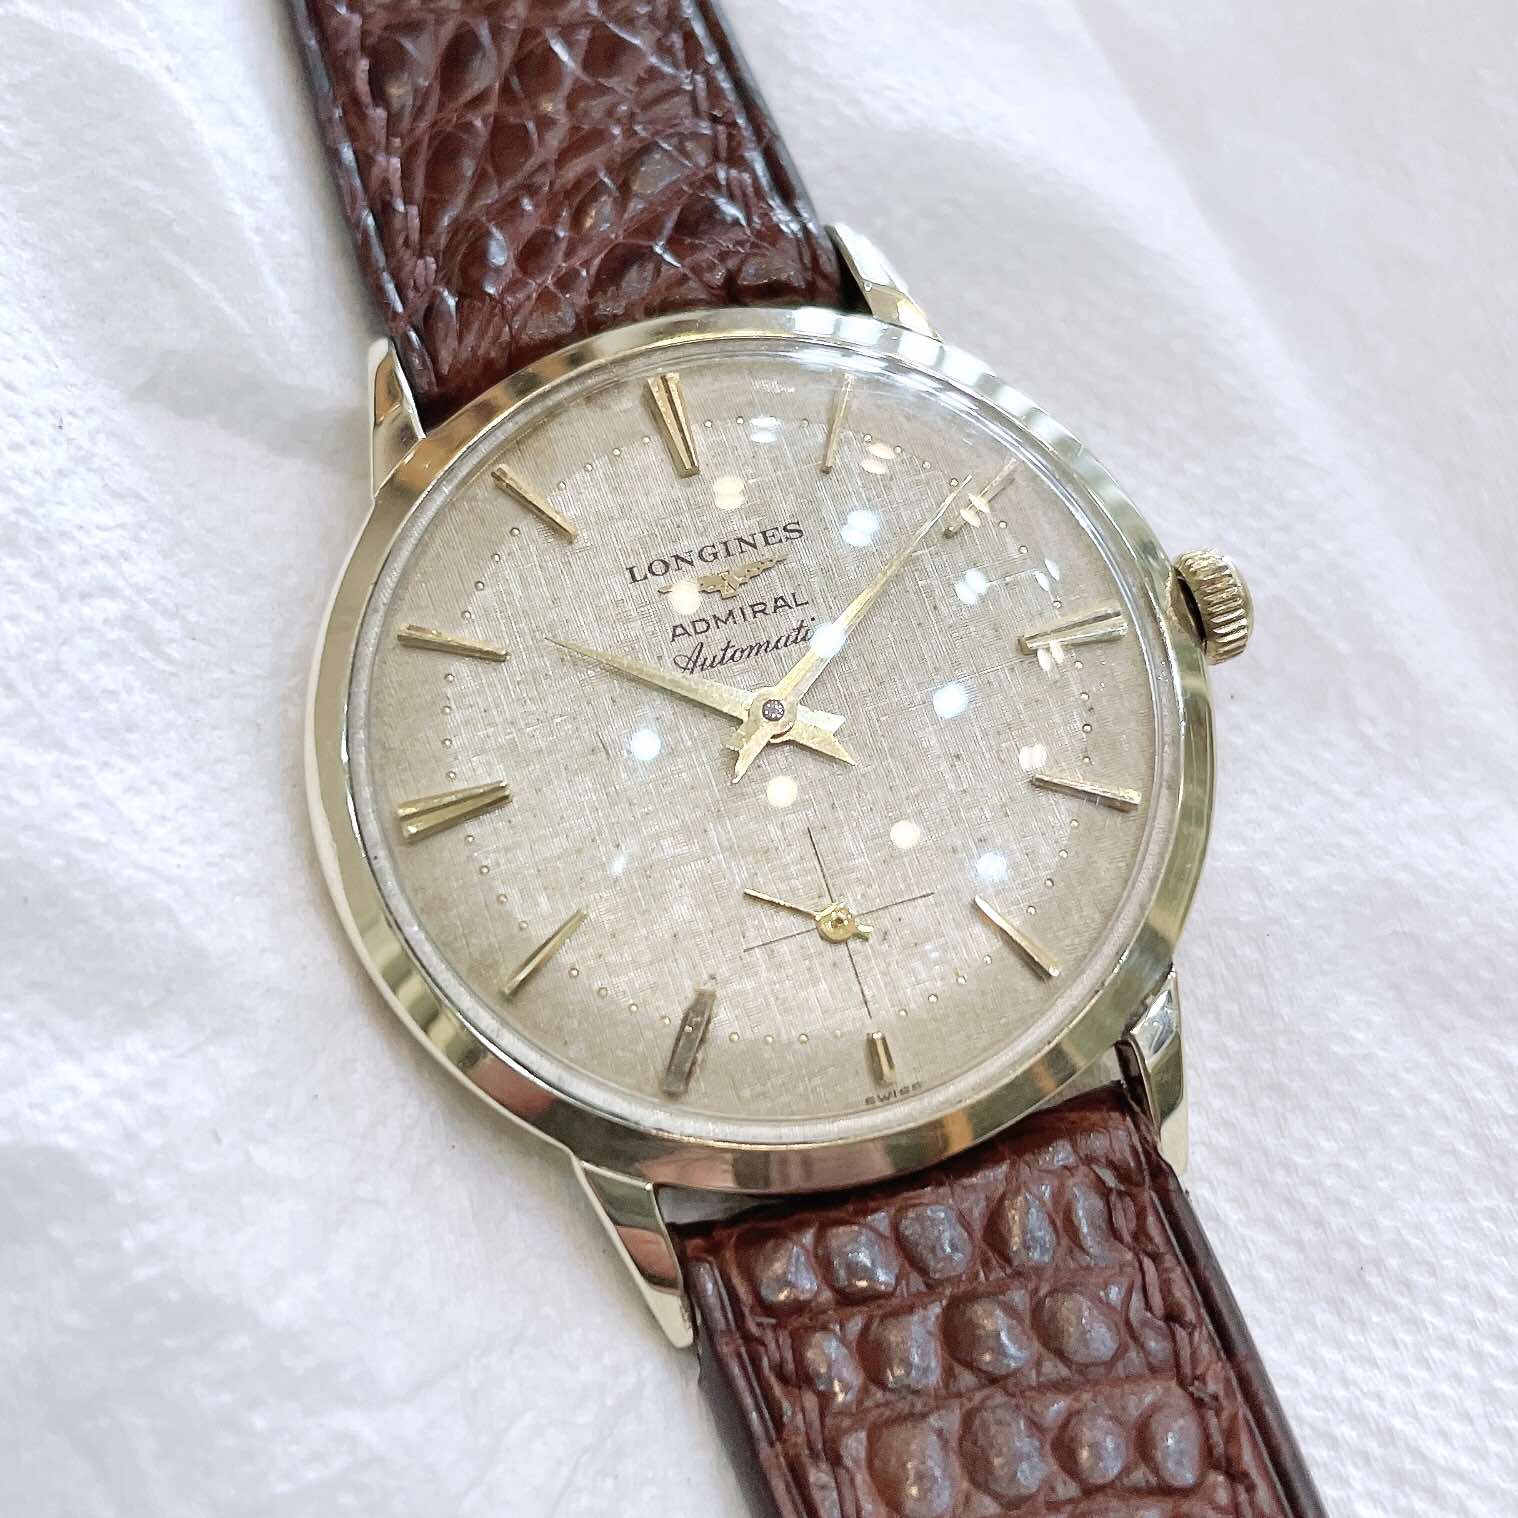 Đồng hồ cổ Longines Admiral - đô đốc đại tướng quân automatic vàng đúc 14k chính hãng Thụy Sĩ